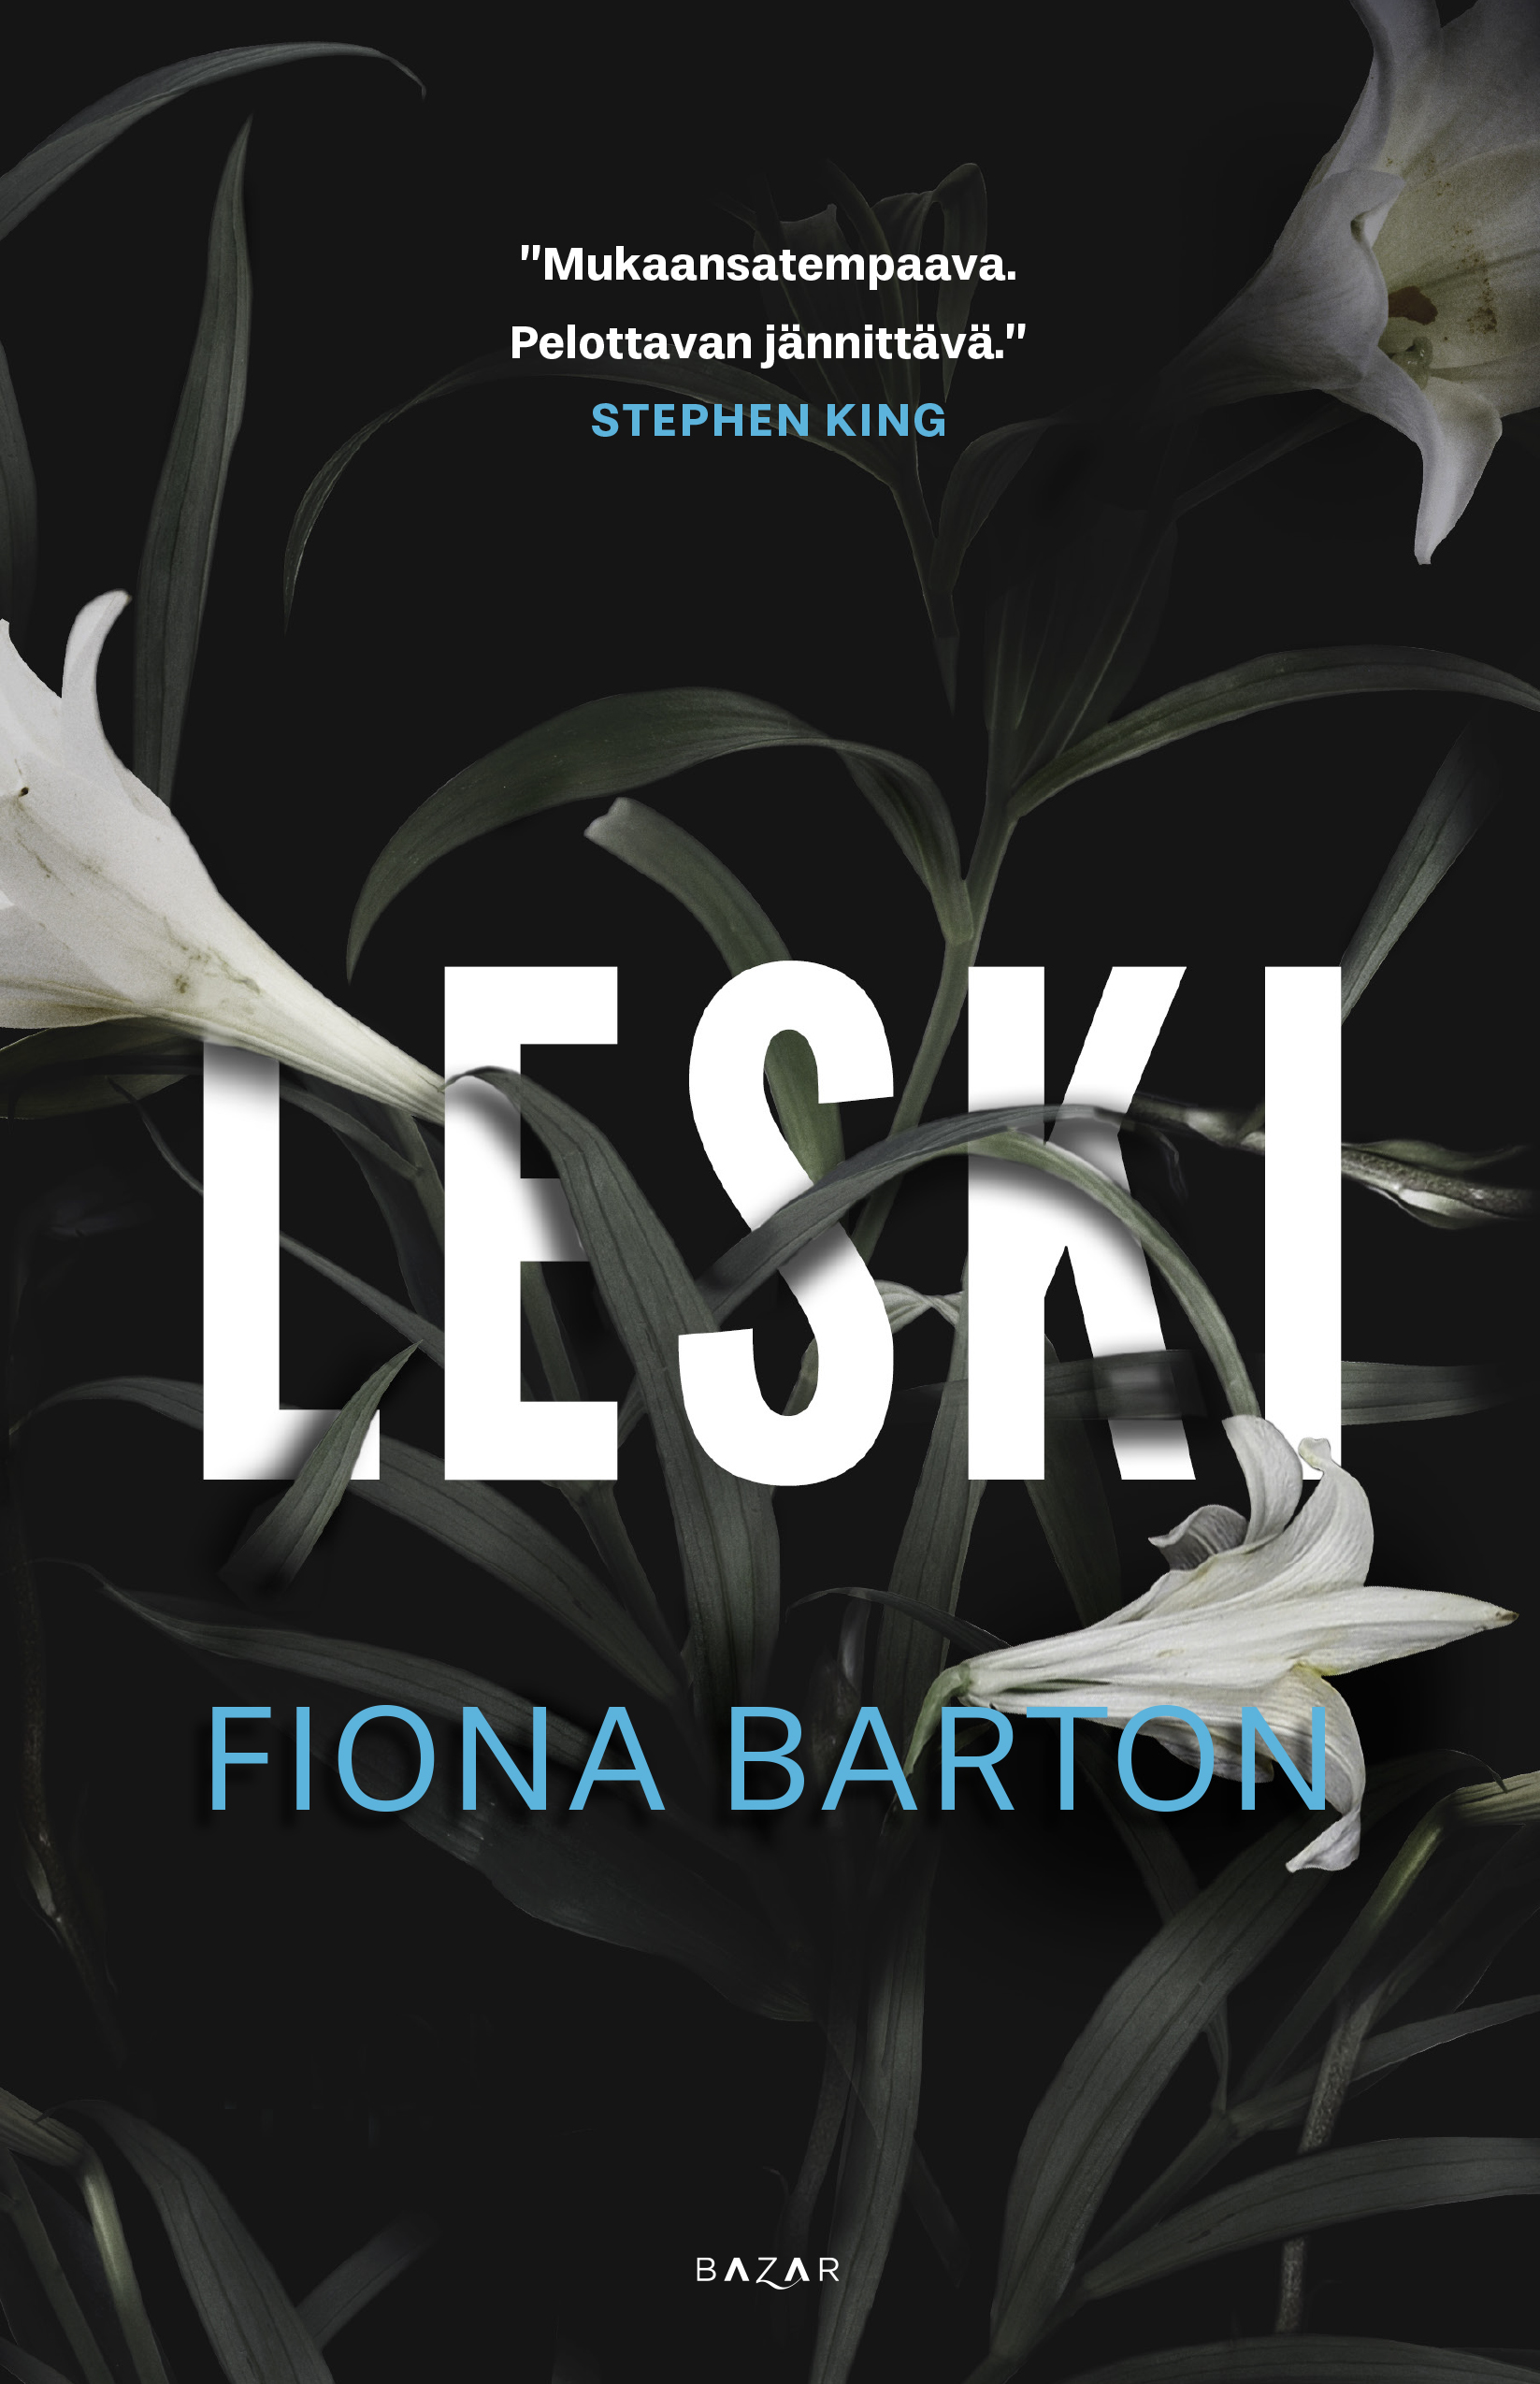 Barton, Fiona - Leski, ebook